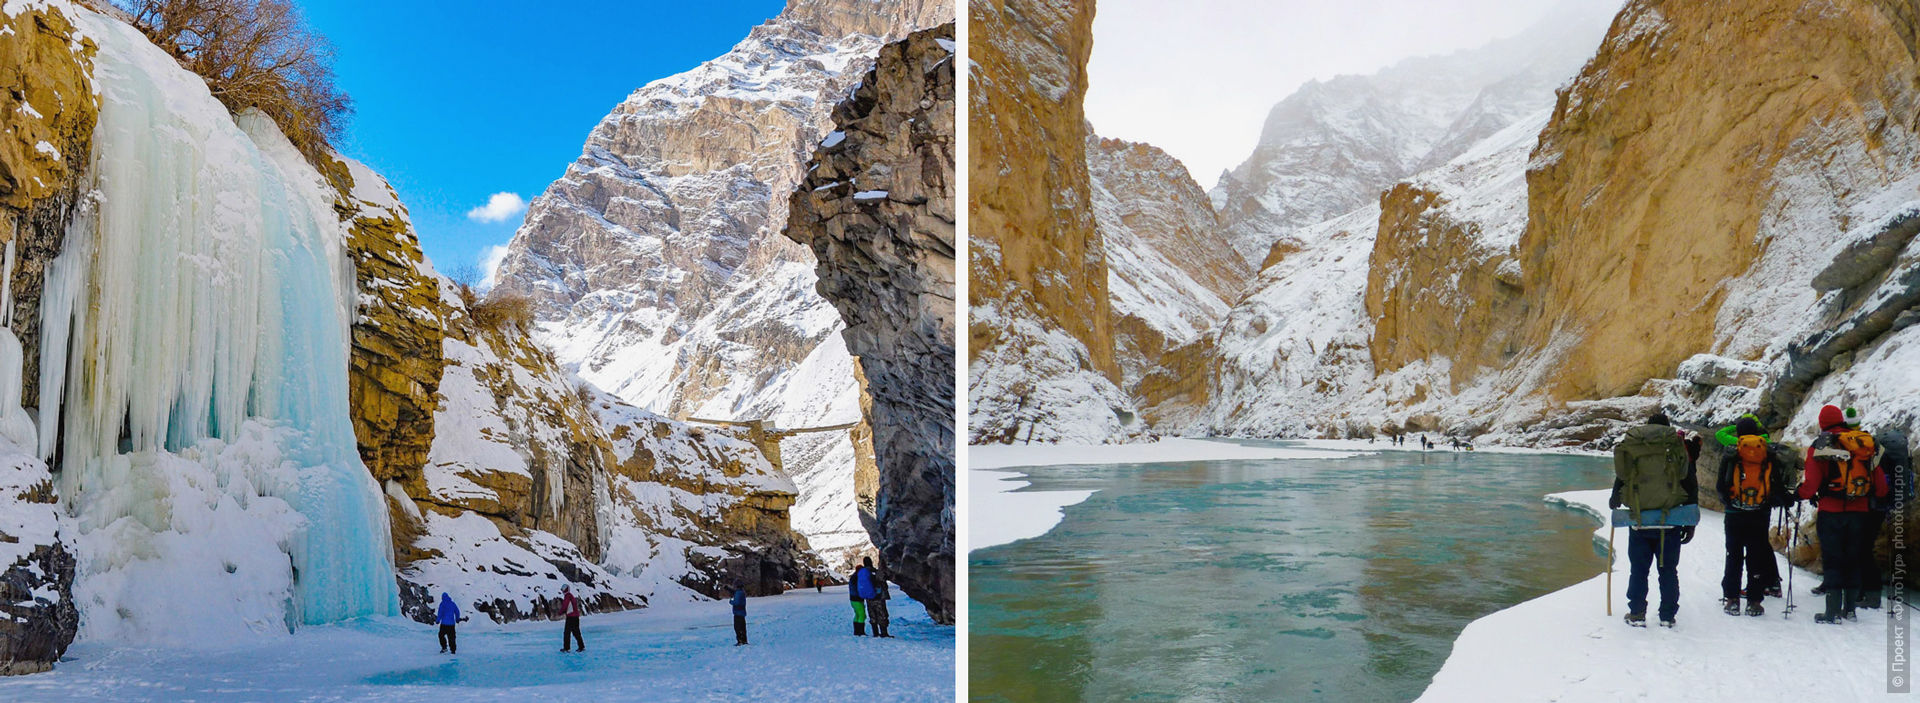 Winter trekking on the ice of the Zanskar River, Chelling Gorge.